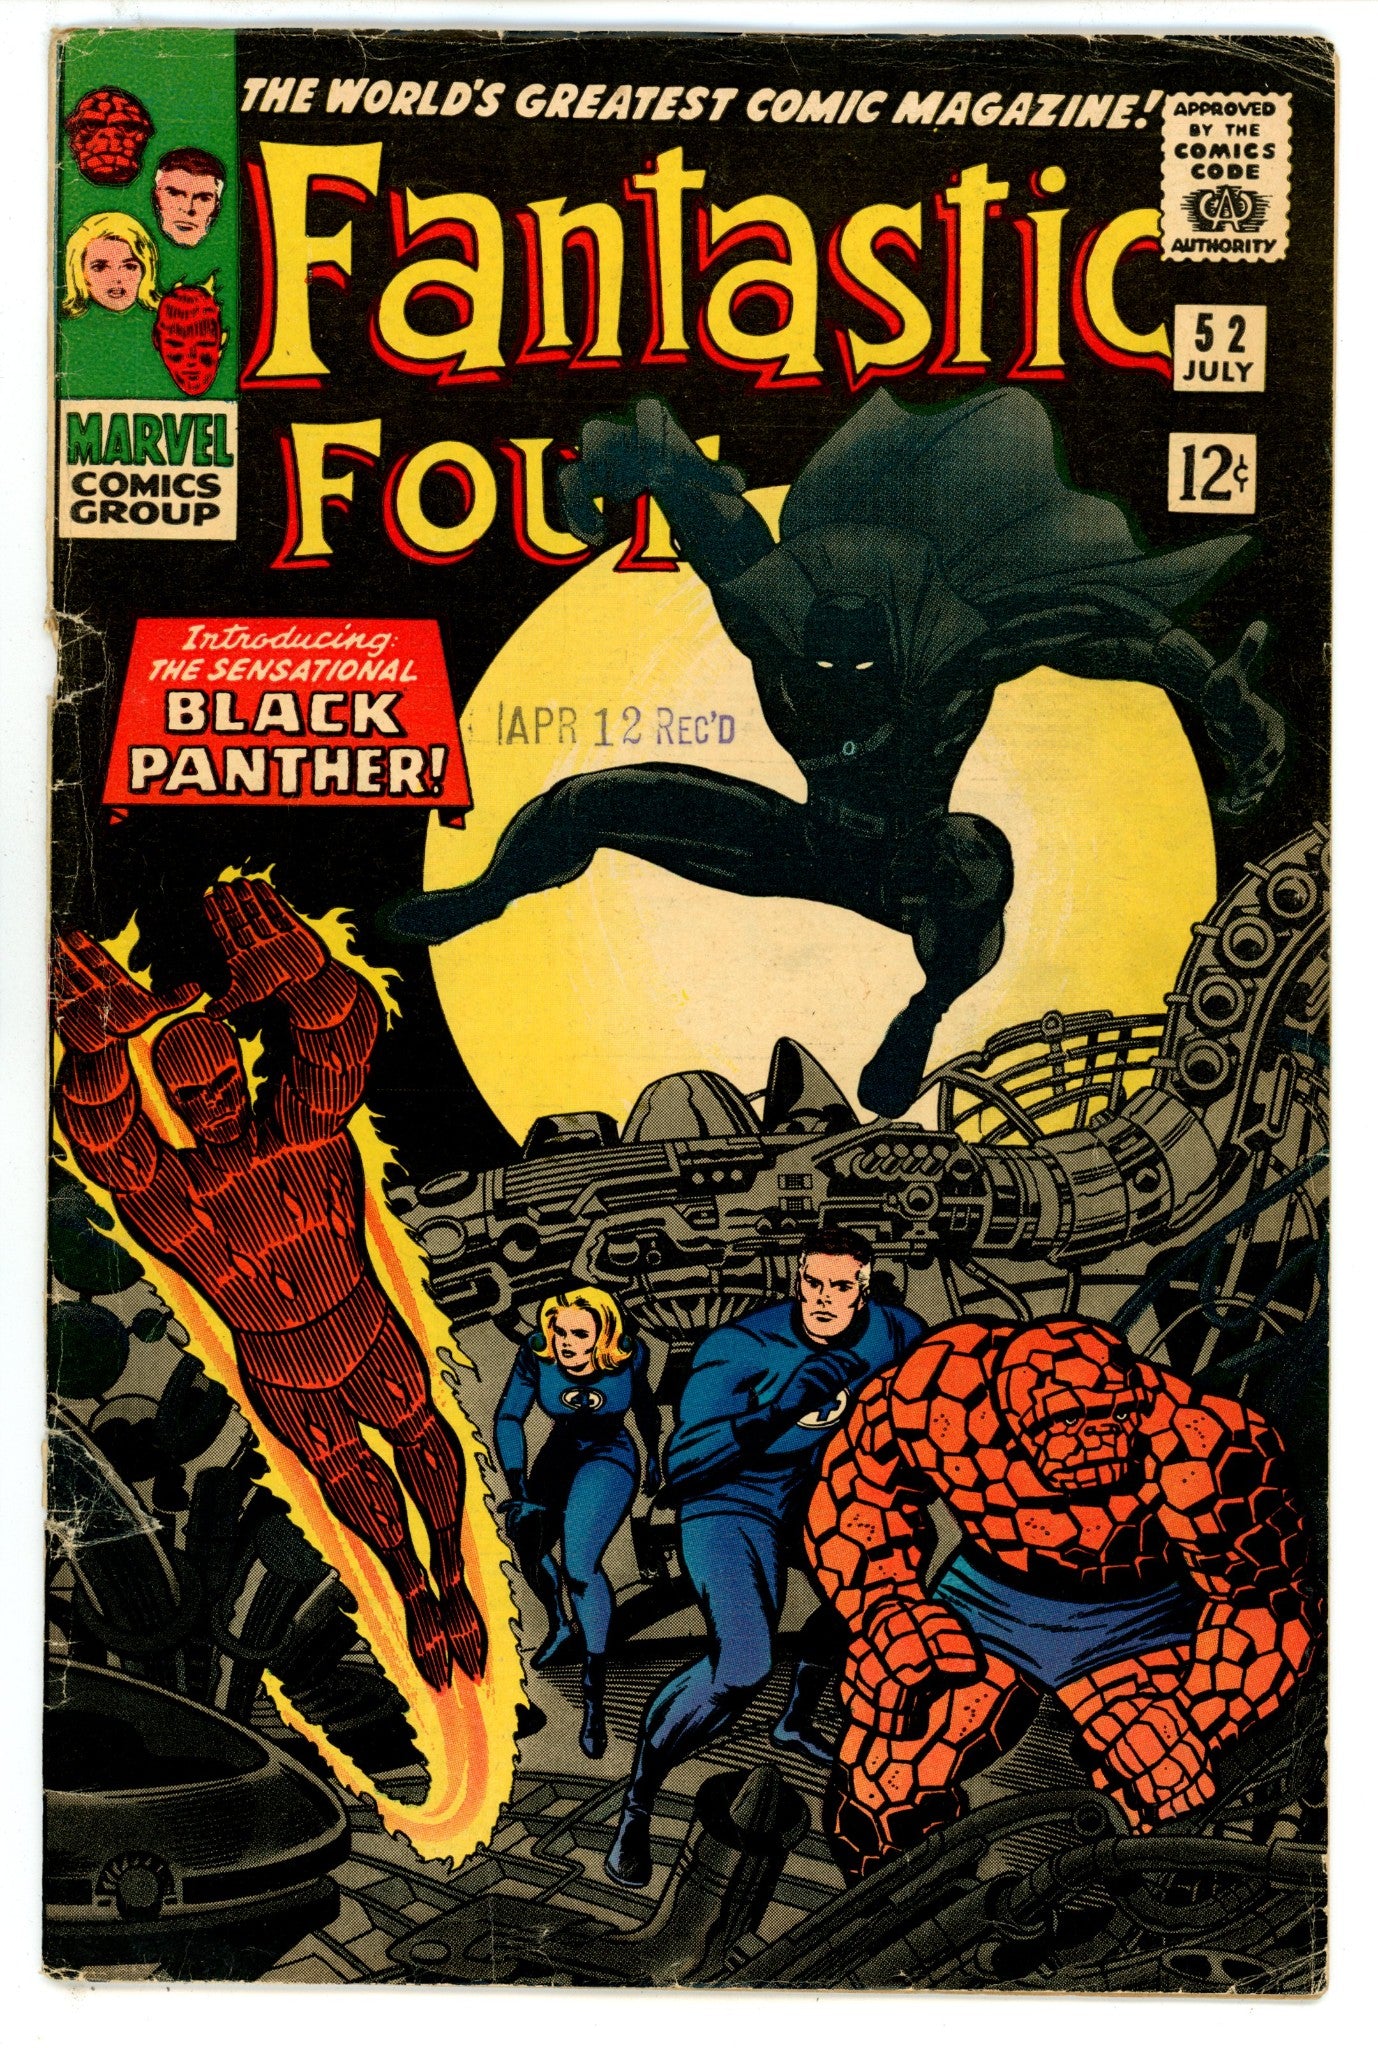 Fantastic Four Vol 1 52 GD (2.0) Bottom Staple Detached (1966) 